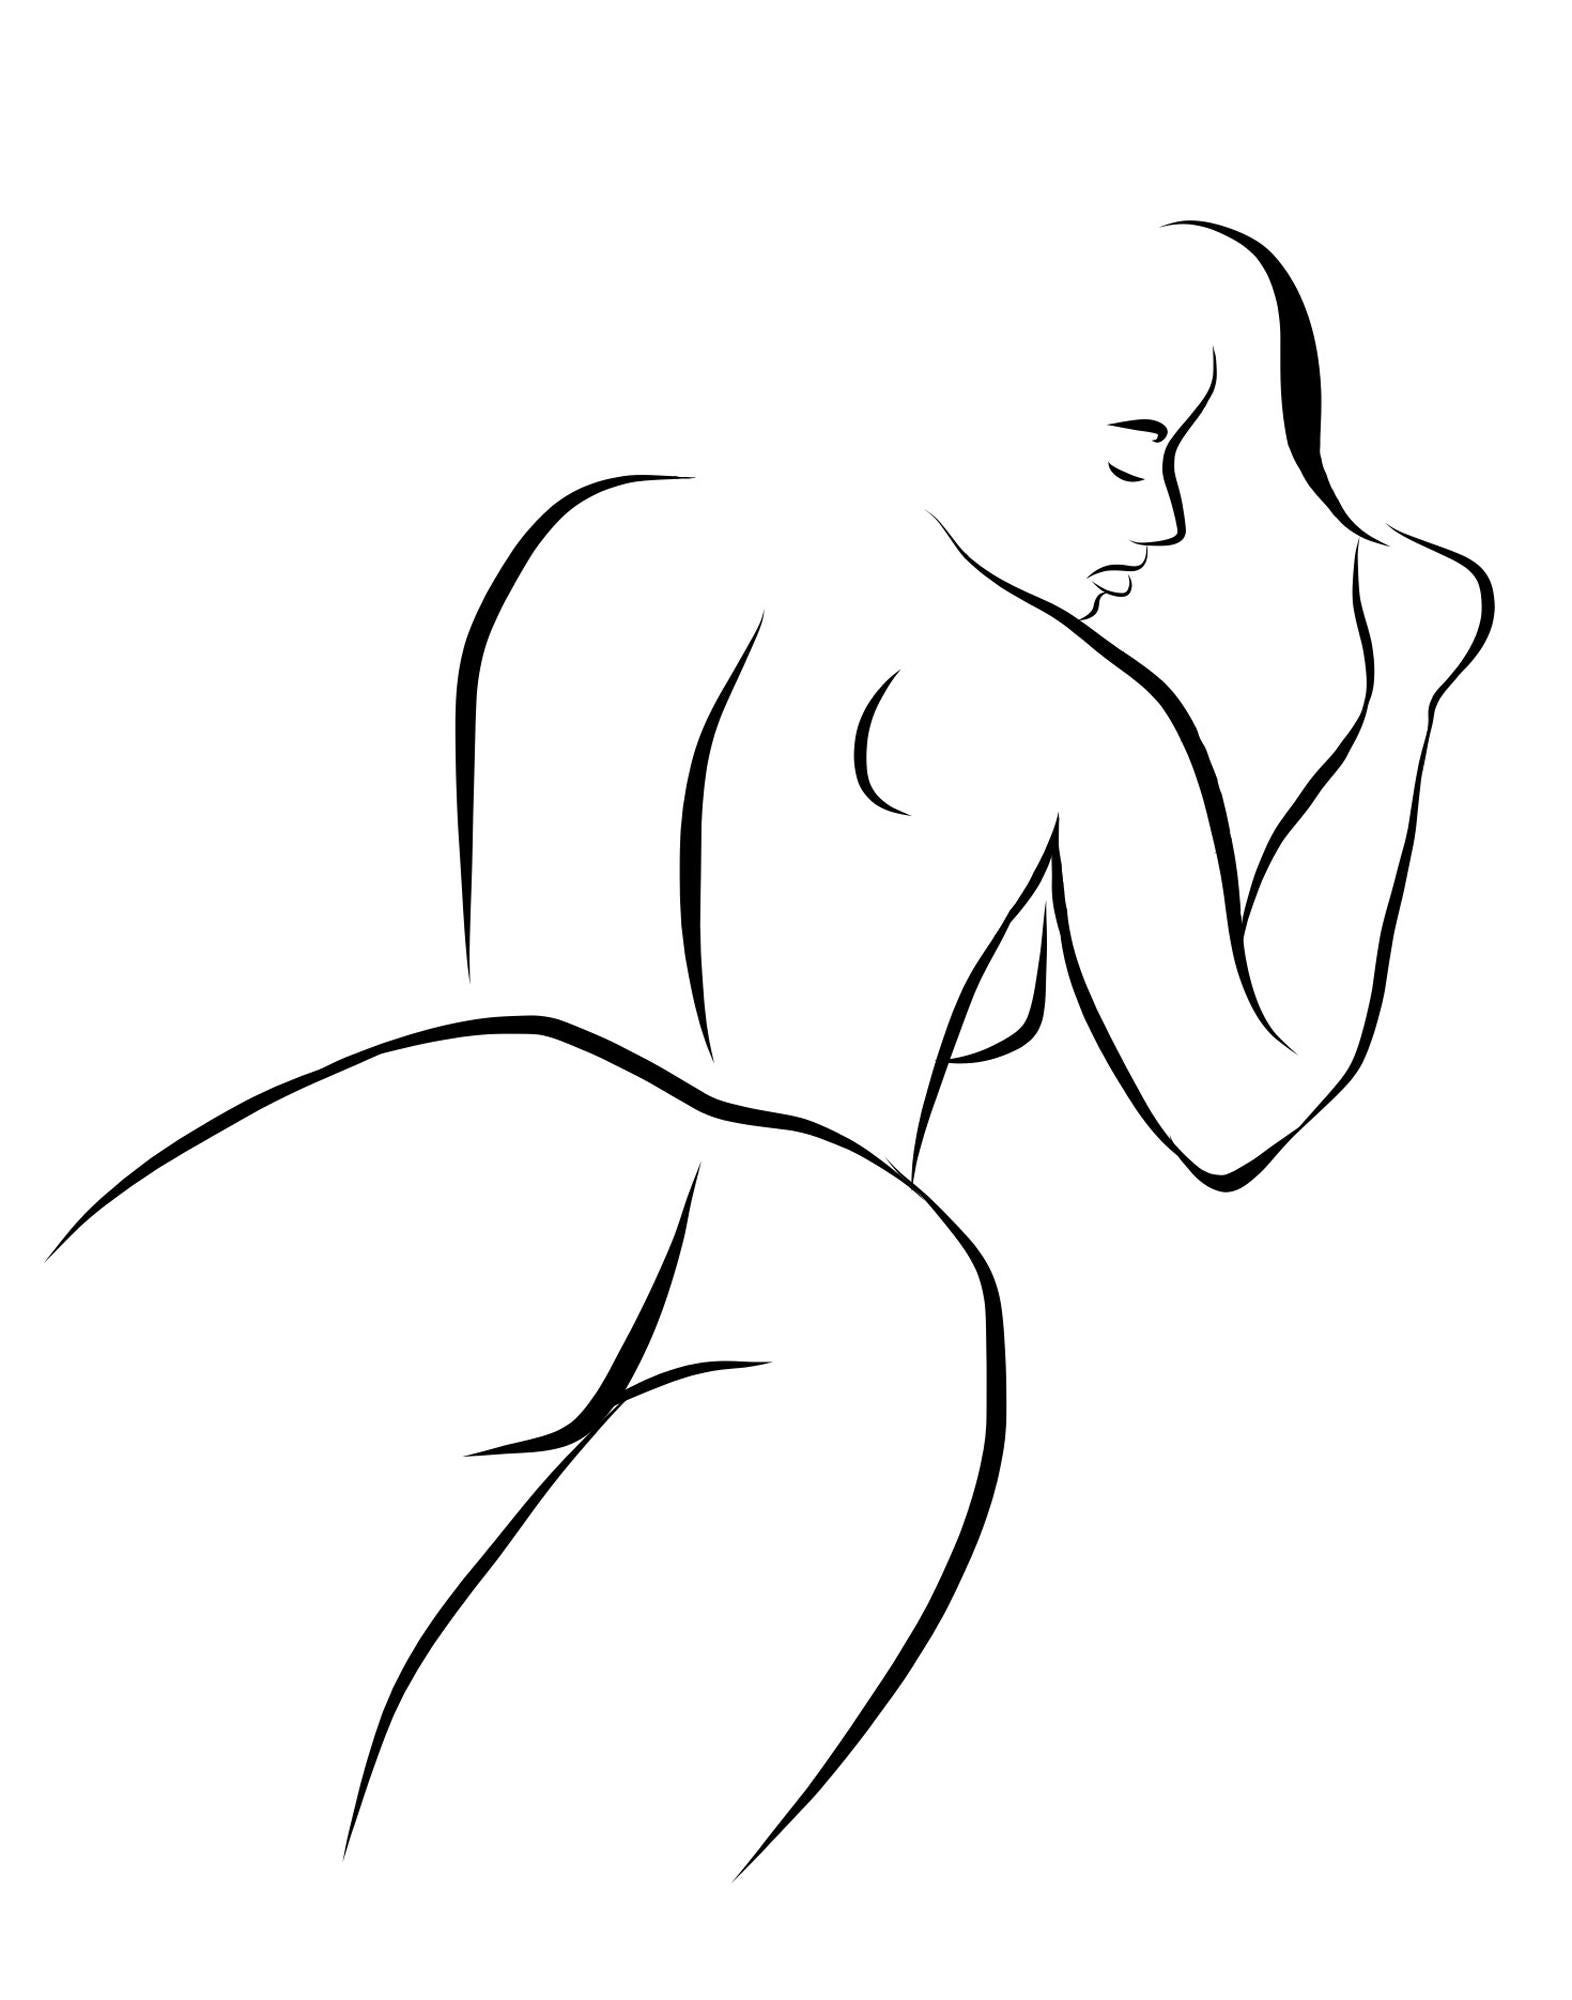 Nude Print Michael Binkley - Haiku n°10   - Dessin vectoriel numérique N&B Femme couchée Femme nue Figure